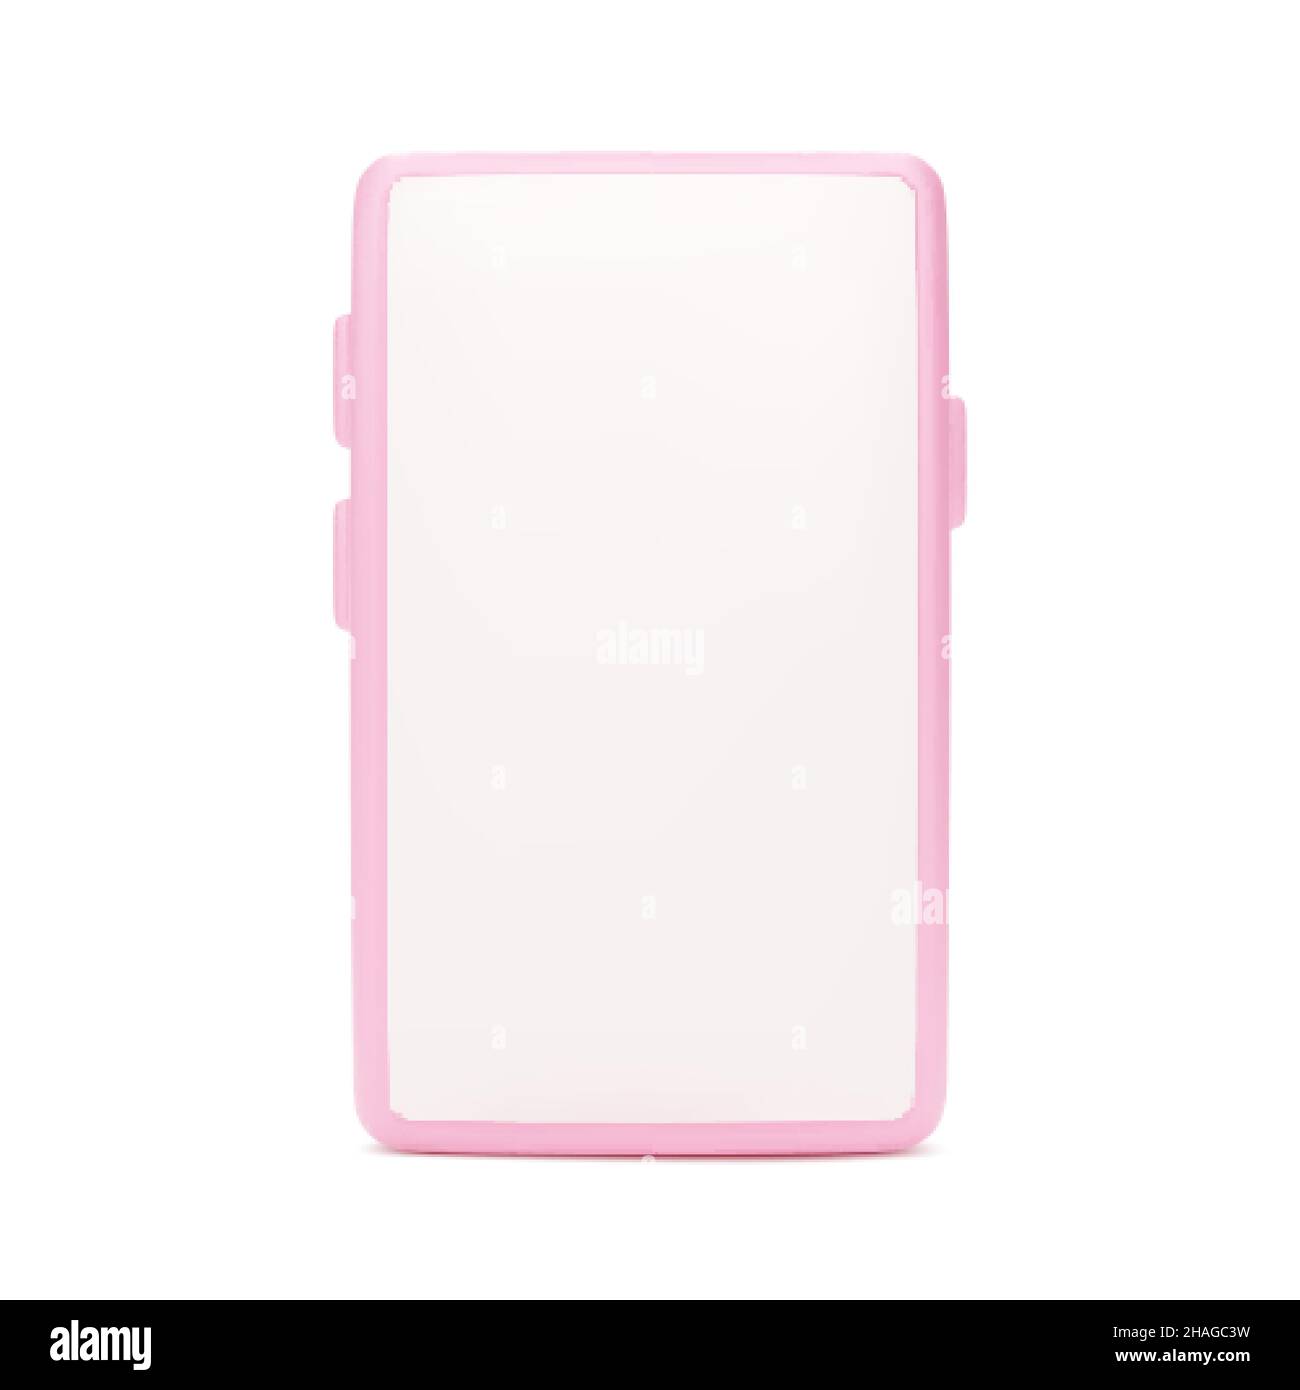 Maquette de téléphone mobile.téléphone 3d vue avant couleur rose.Smartphone avec écran vide isolé sur fond blanc.Illustration vectorielle Illustration de Vecteur